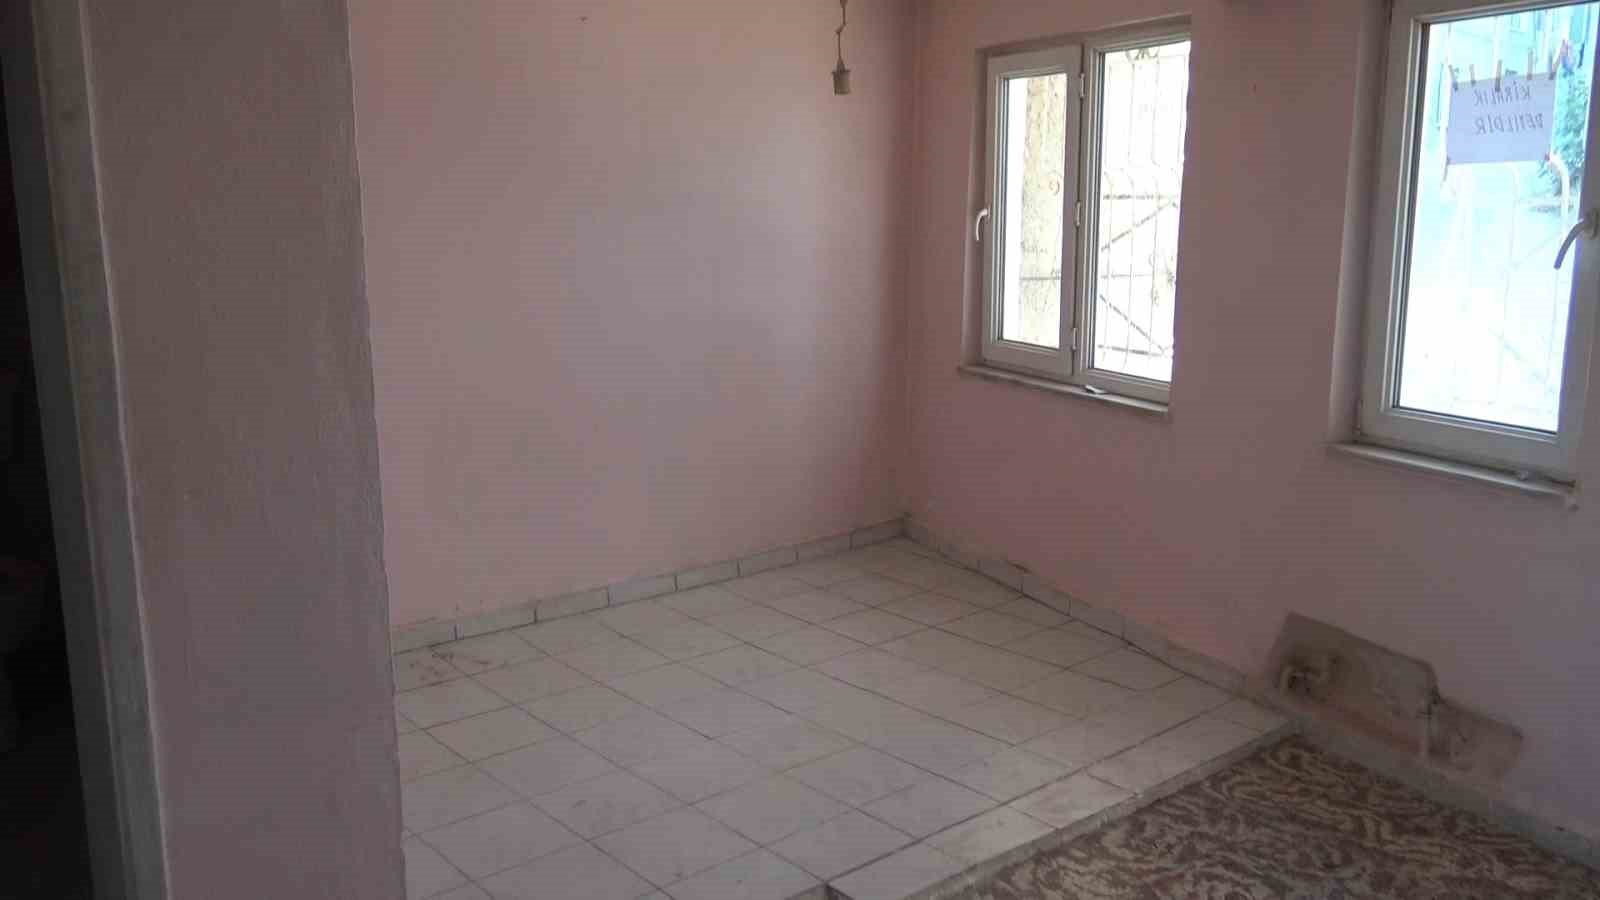 Bursa’da kiracısını kapı dışarı eden ev sahibi, 750 lira yaptığı kirayı 5 aydır alamadığını iddia etti